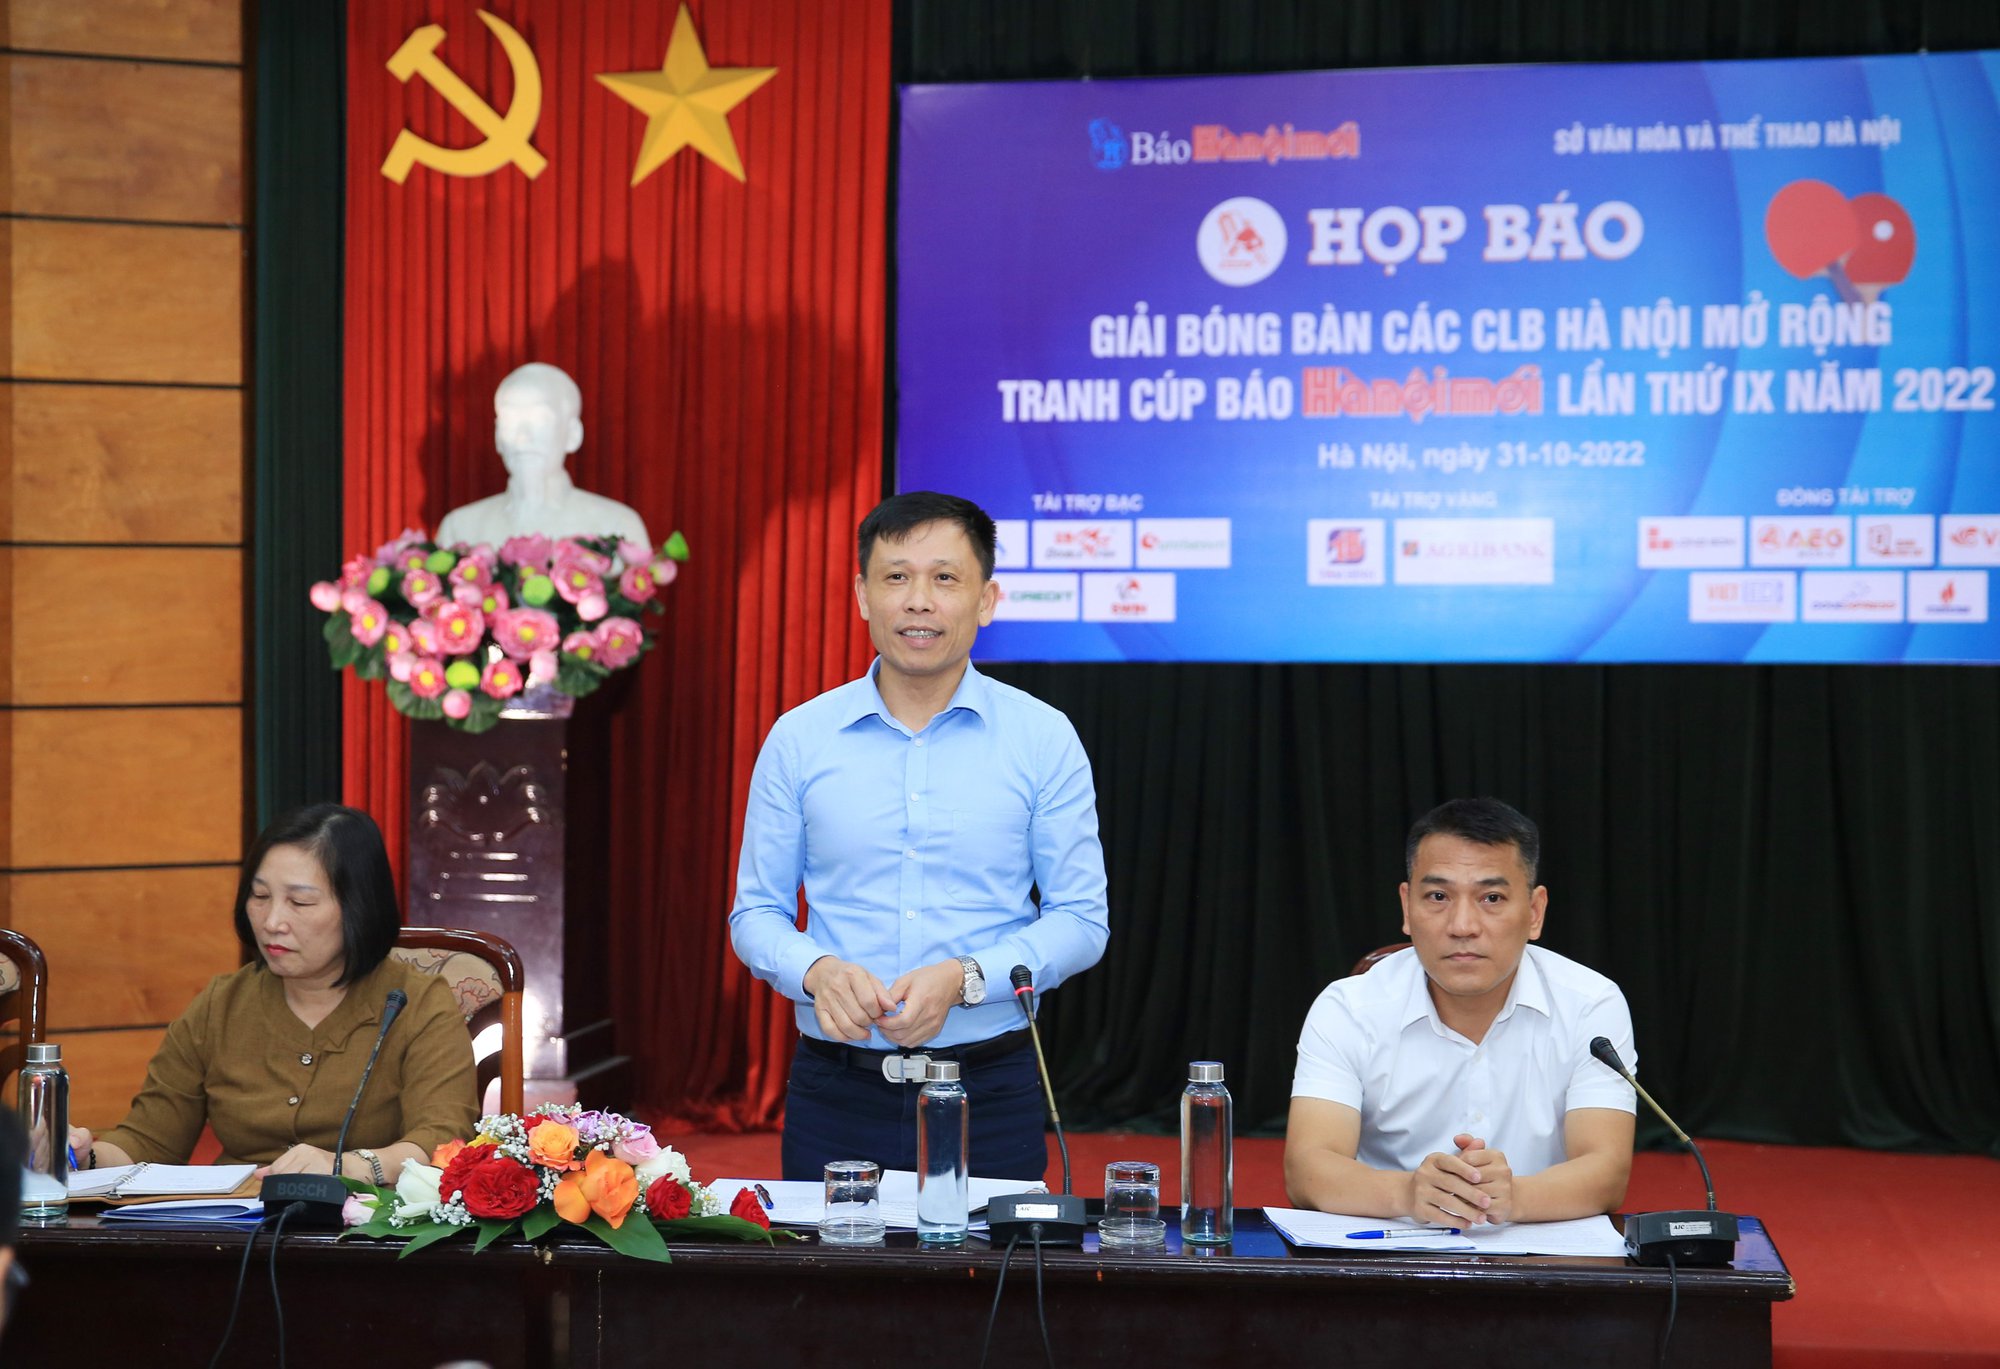 Cựu vô địch SEA Games dự Giải bóng bàn các CLB Hà Nội mở rộng 2022 - Ảnh 2.